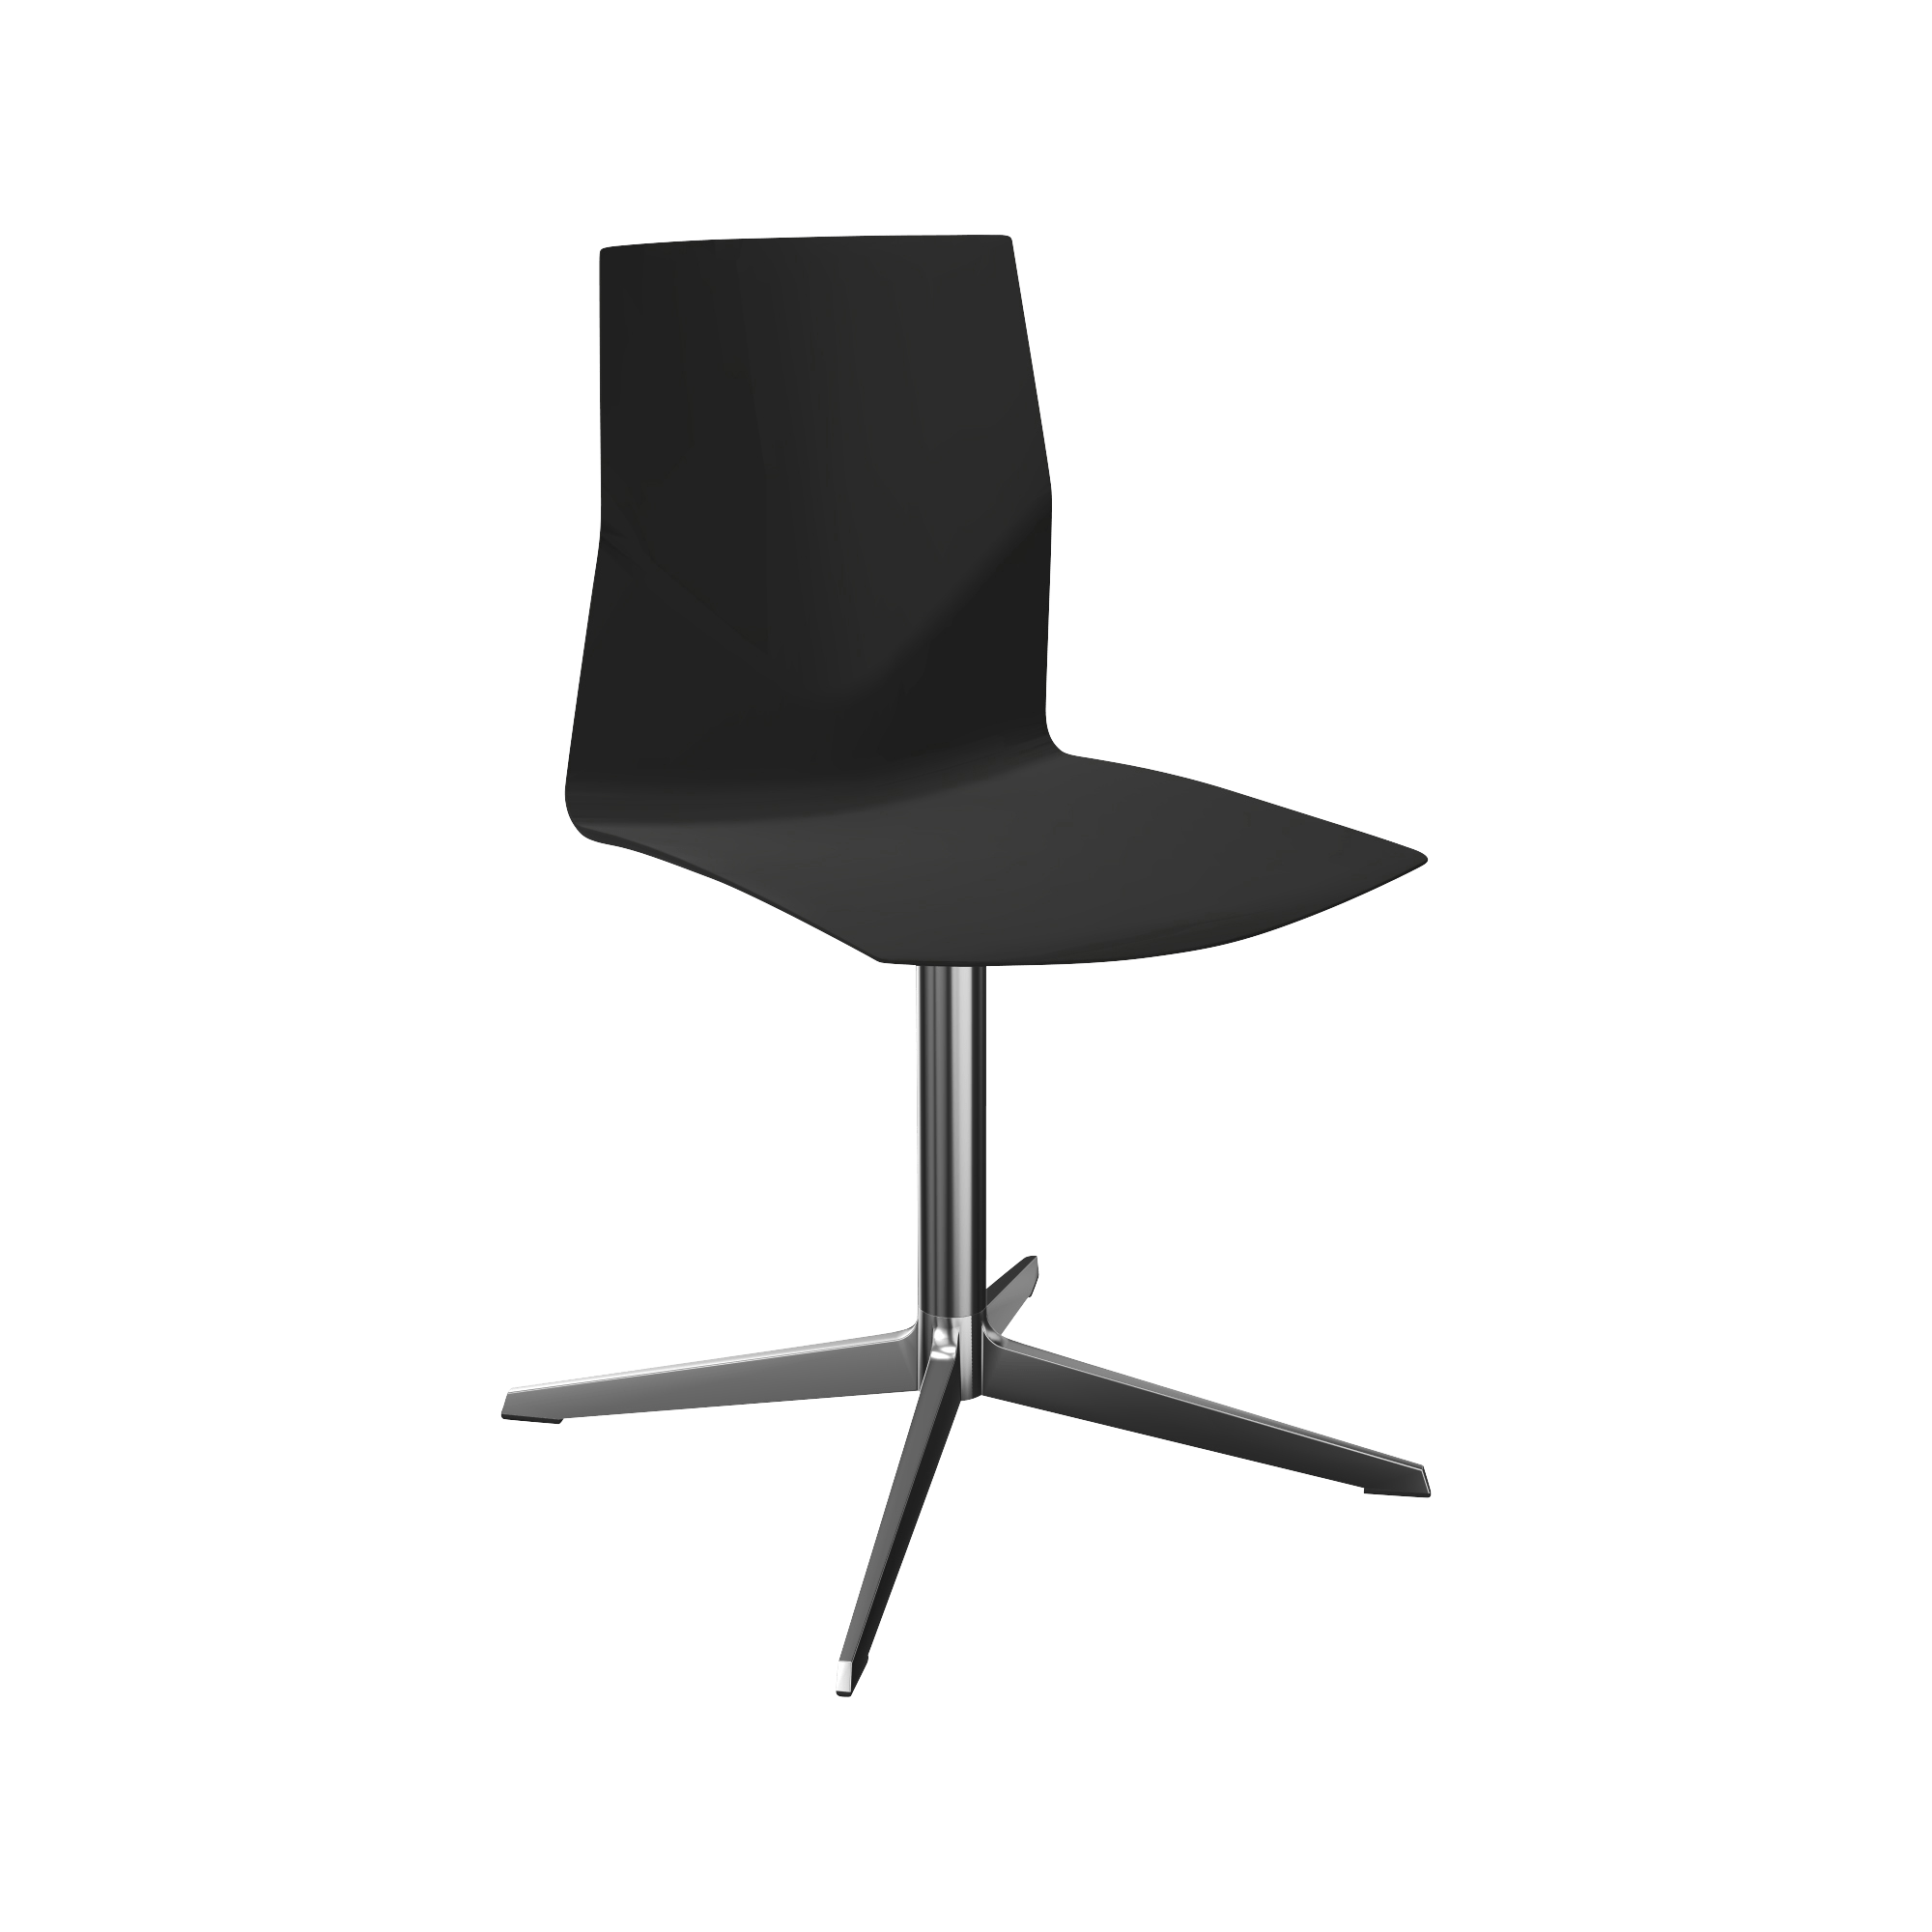 A black office chair and a chrome pedestal leg